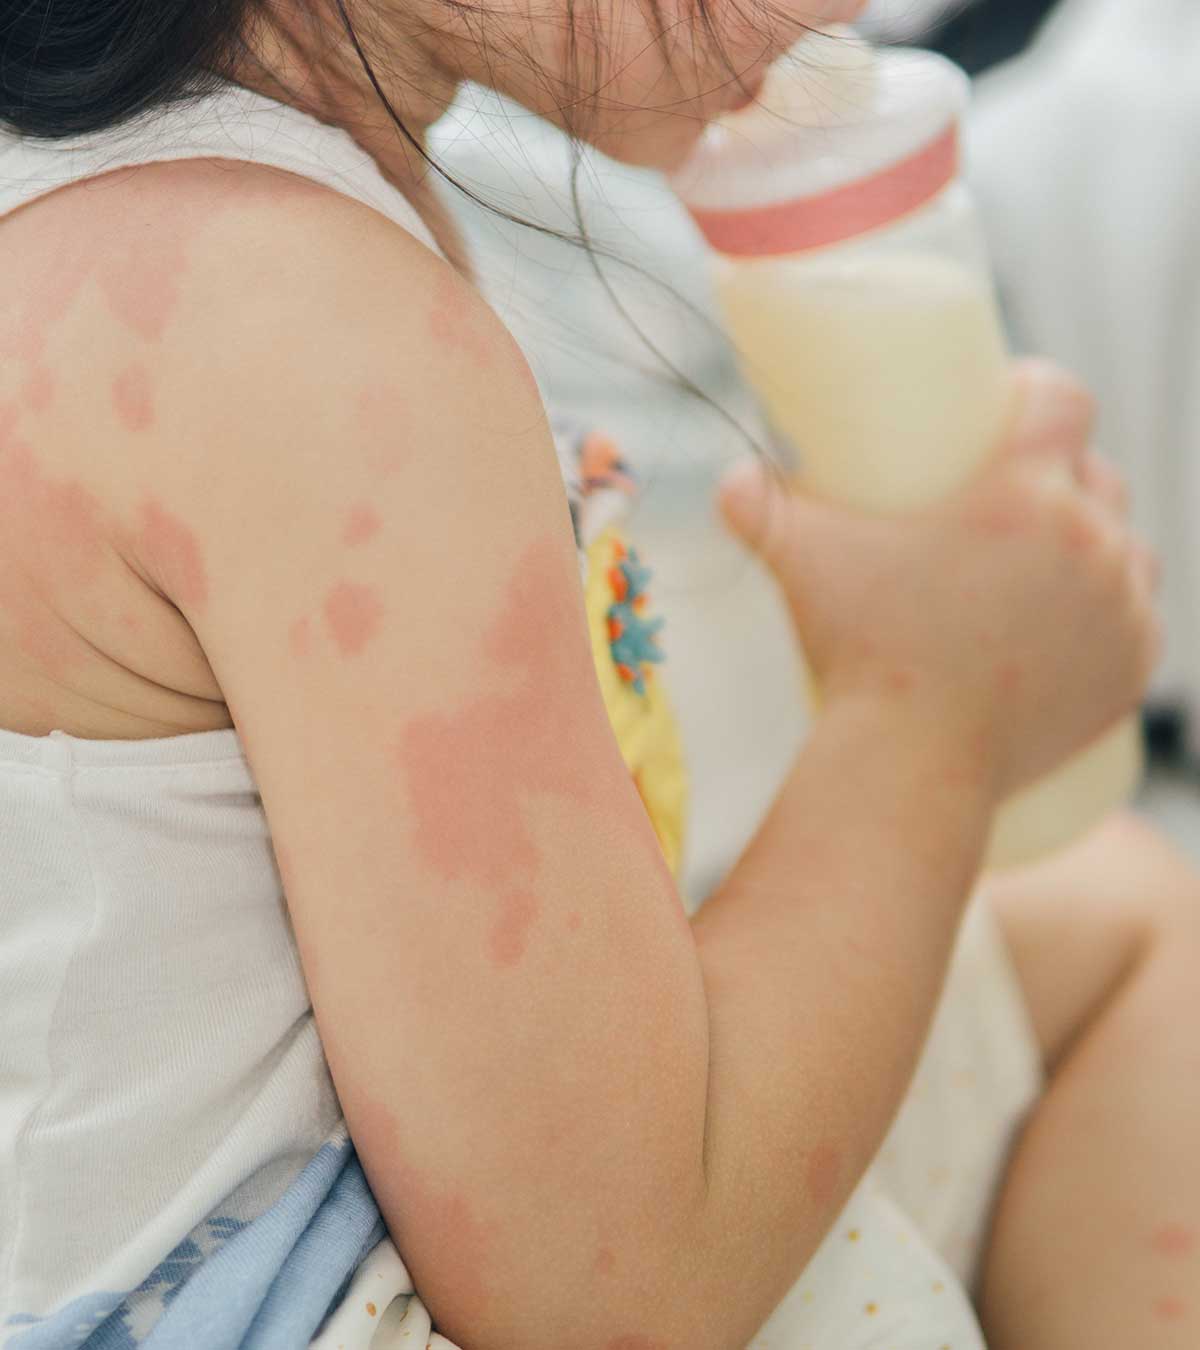 儿童牛奶过敏的6个重要迹象和原因